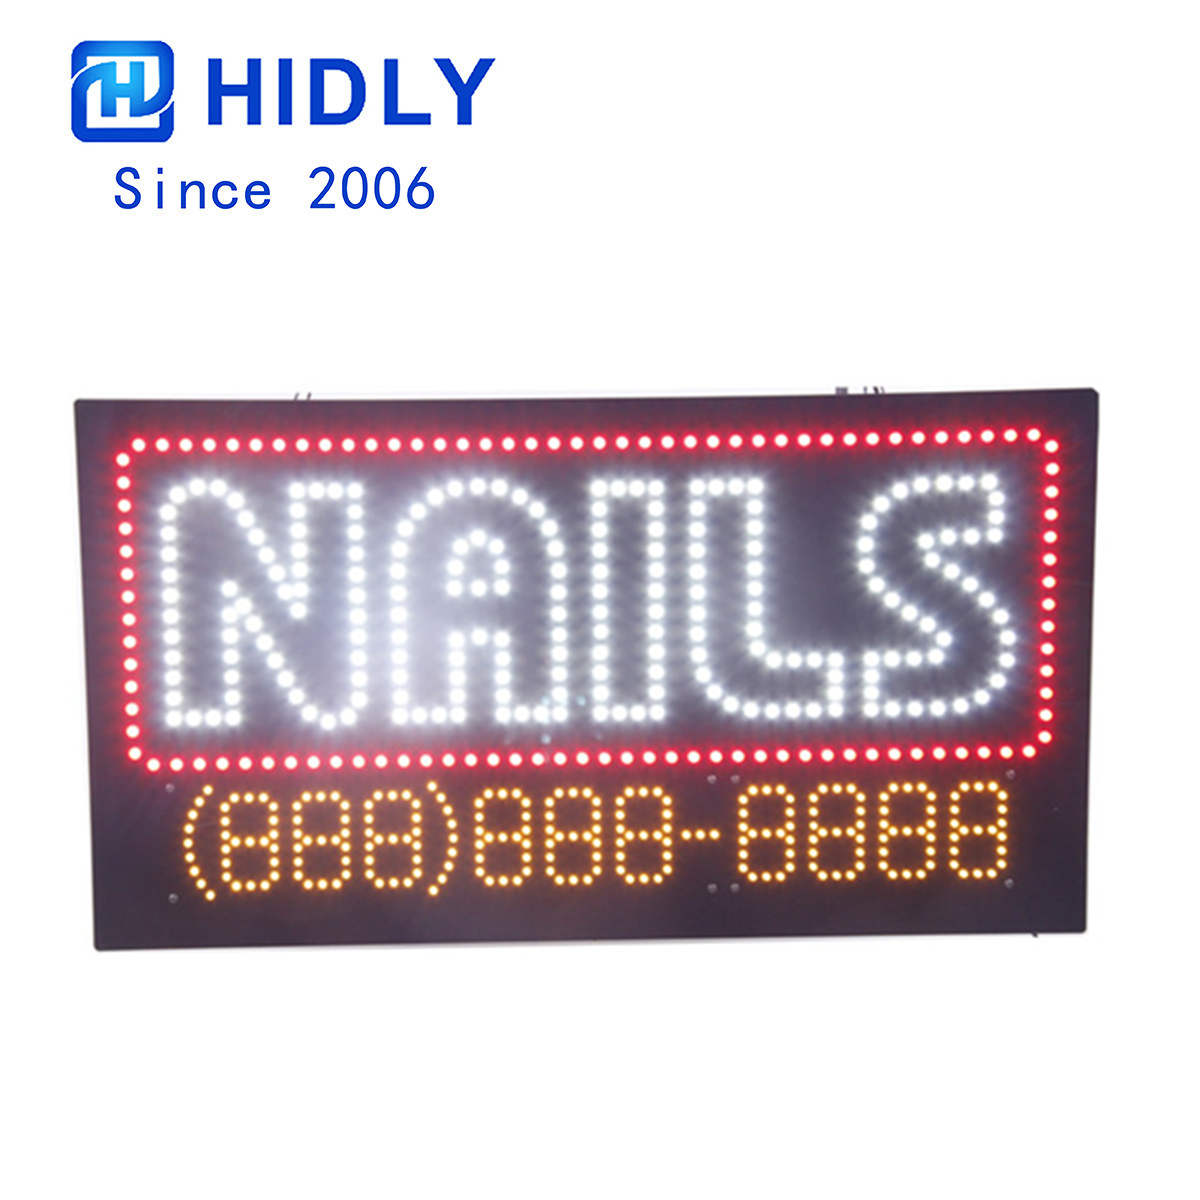 nails large led sign